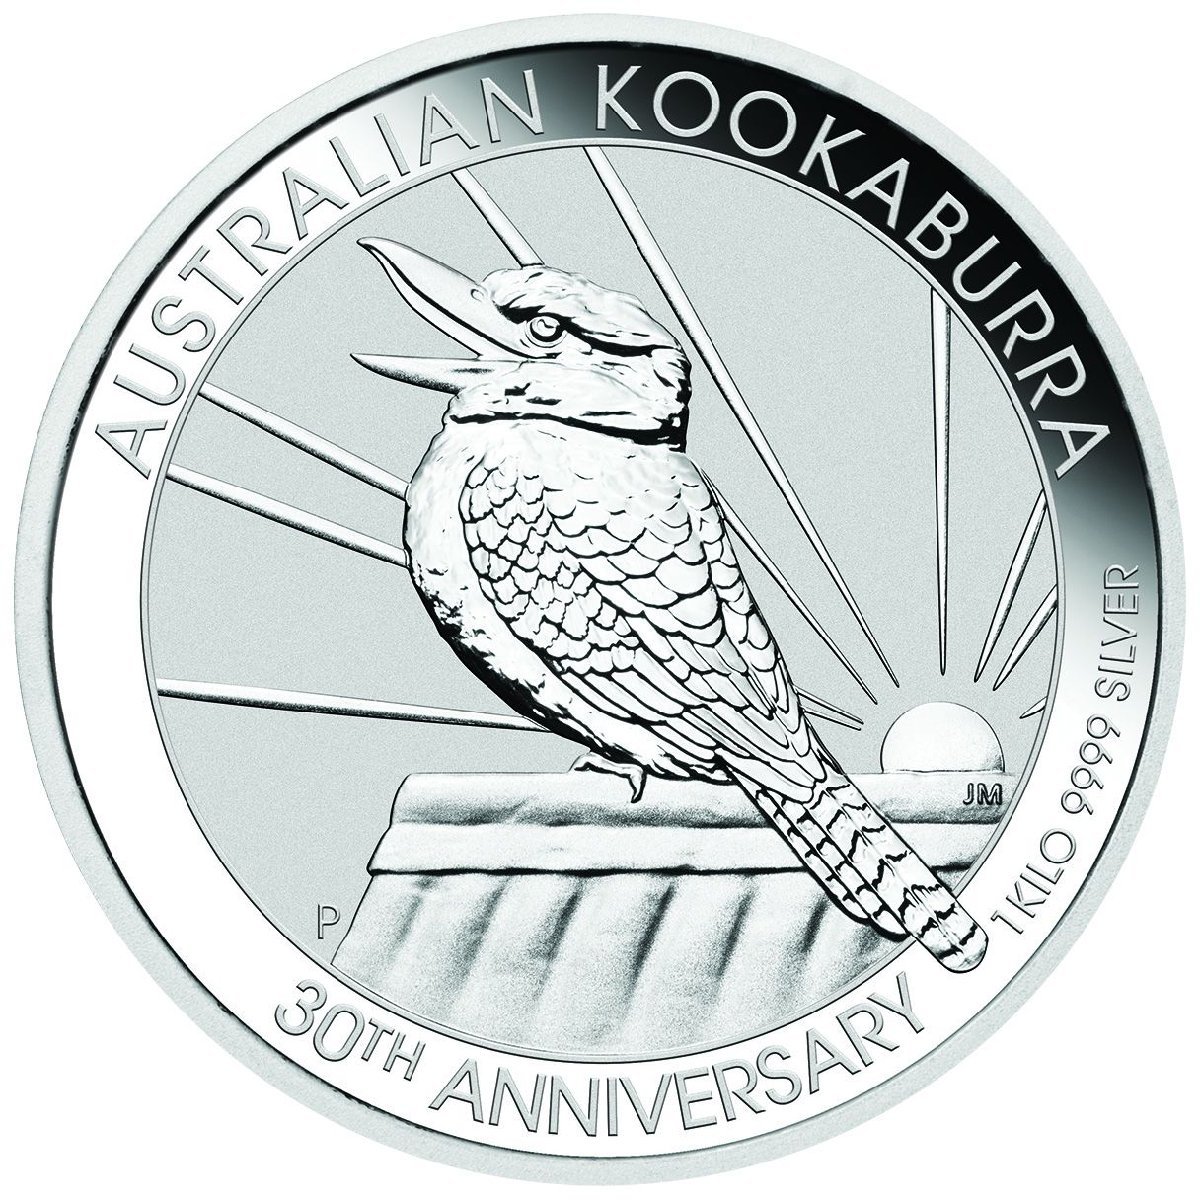 [保証書・カプセル付き] 2020年 (新品) オーストラリア「クッカバラ・ワライカワセミ」純銀 1キロ 銀貨